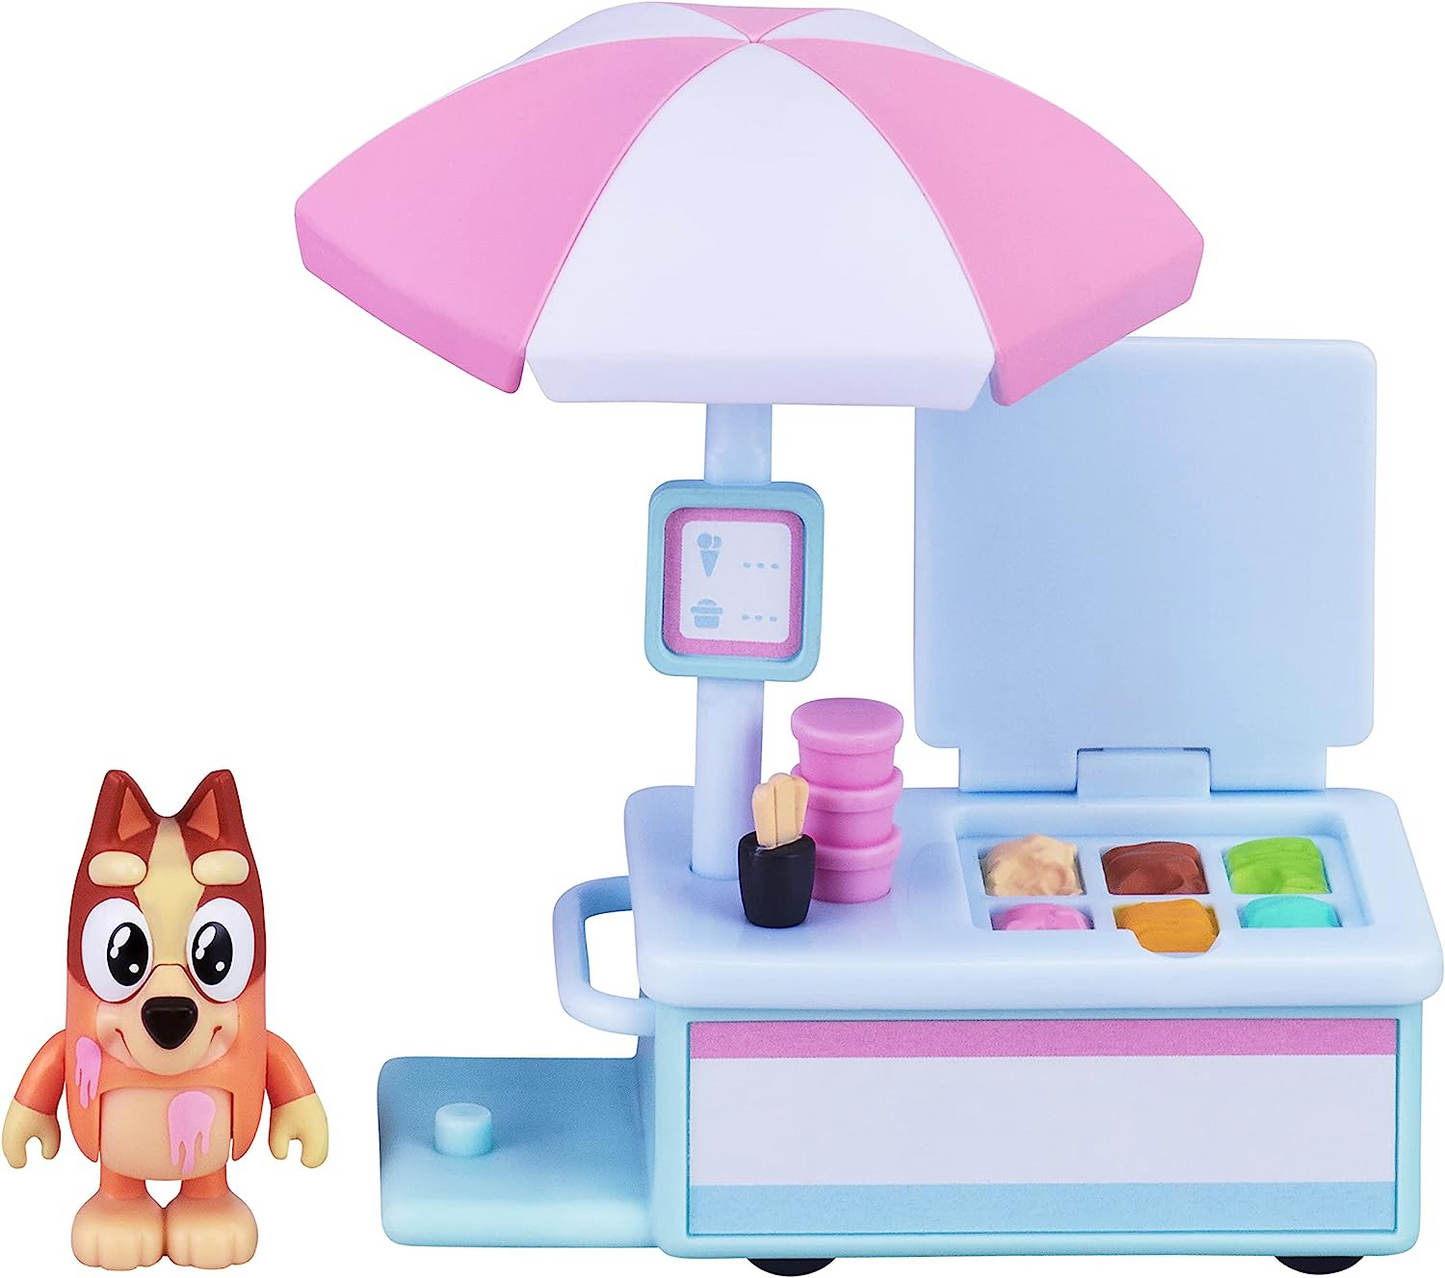 Bluey Playset de veículo de sorvete do Bingo com boneco de ação de personagem colecionável oficial de 2,5-3 polegadas com seu carrinho de sorvete